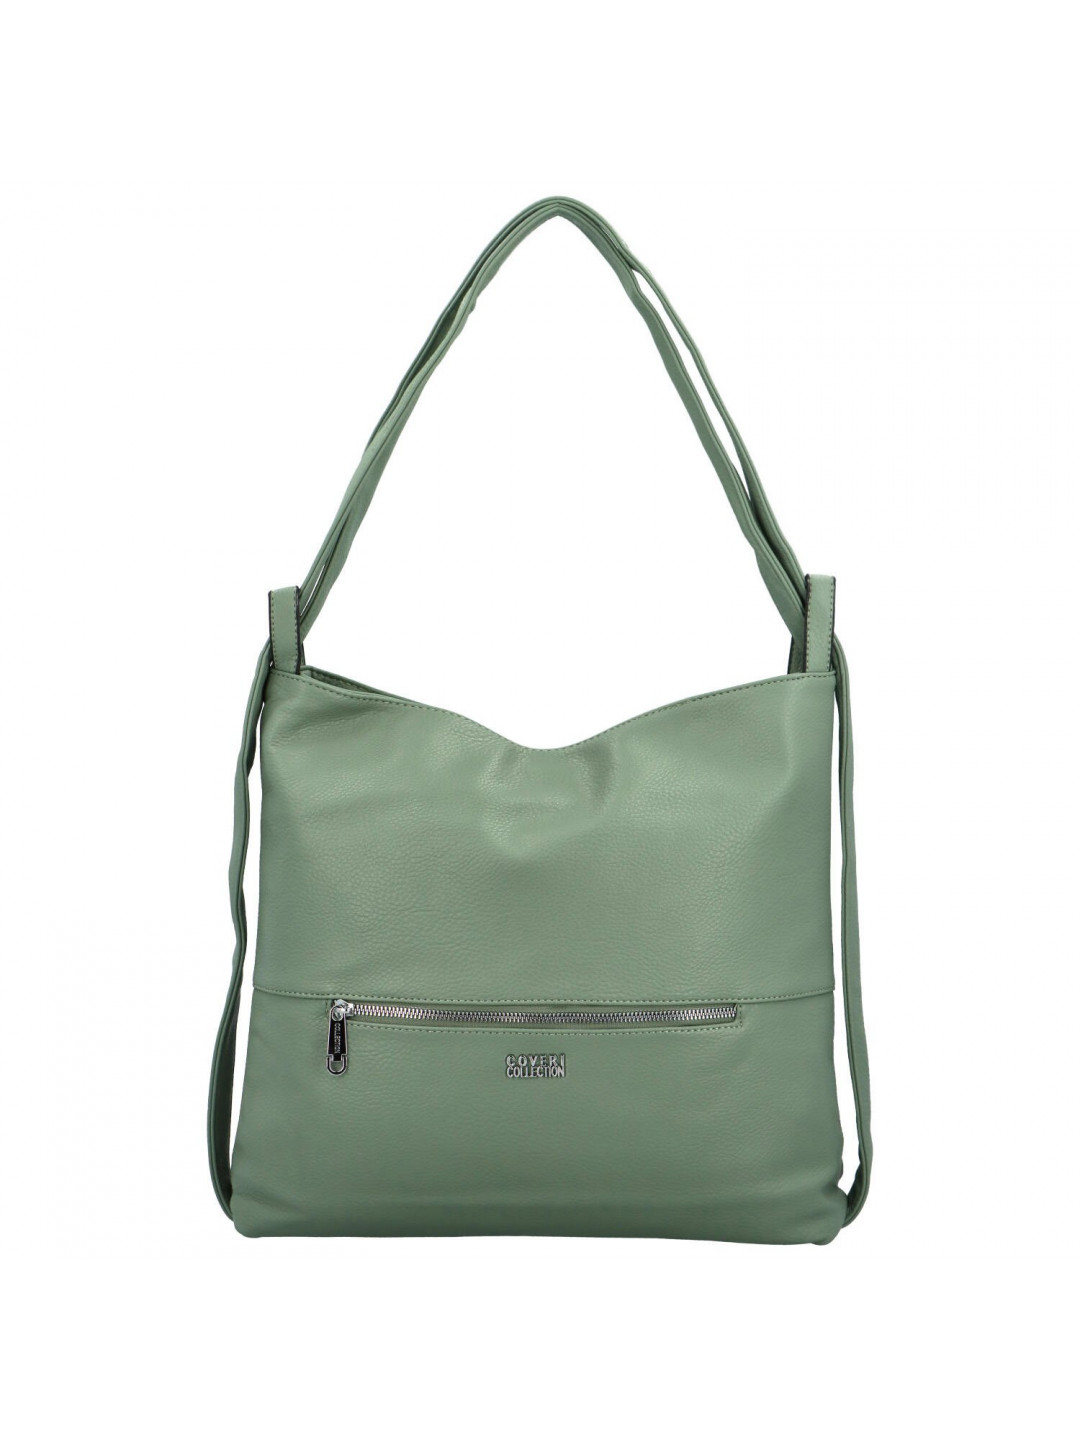 Dámský kabelko batůžek zelený – Coveri Carolinns